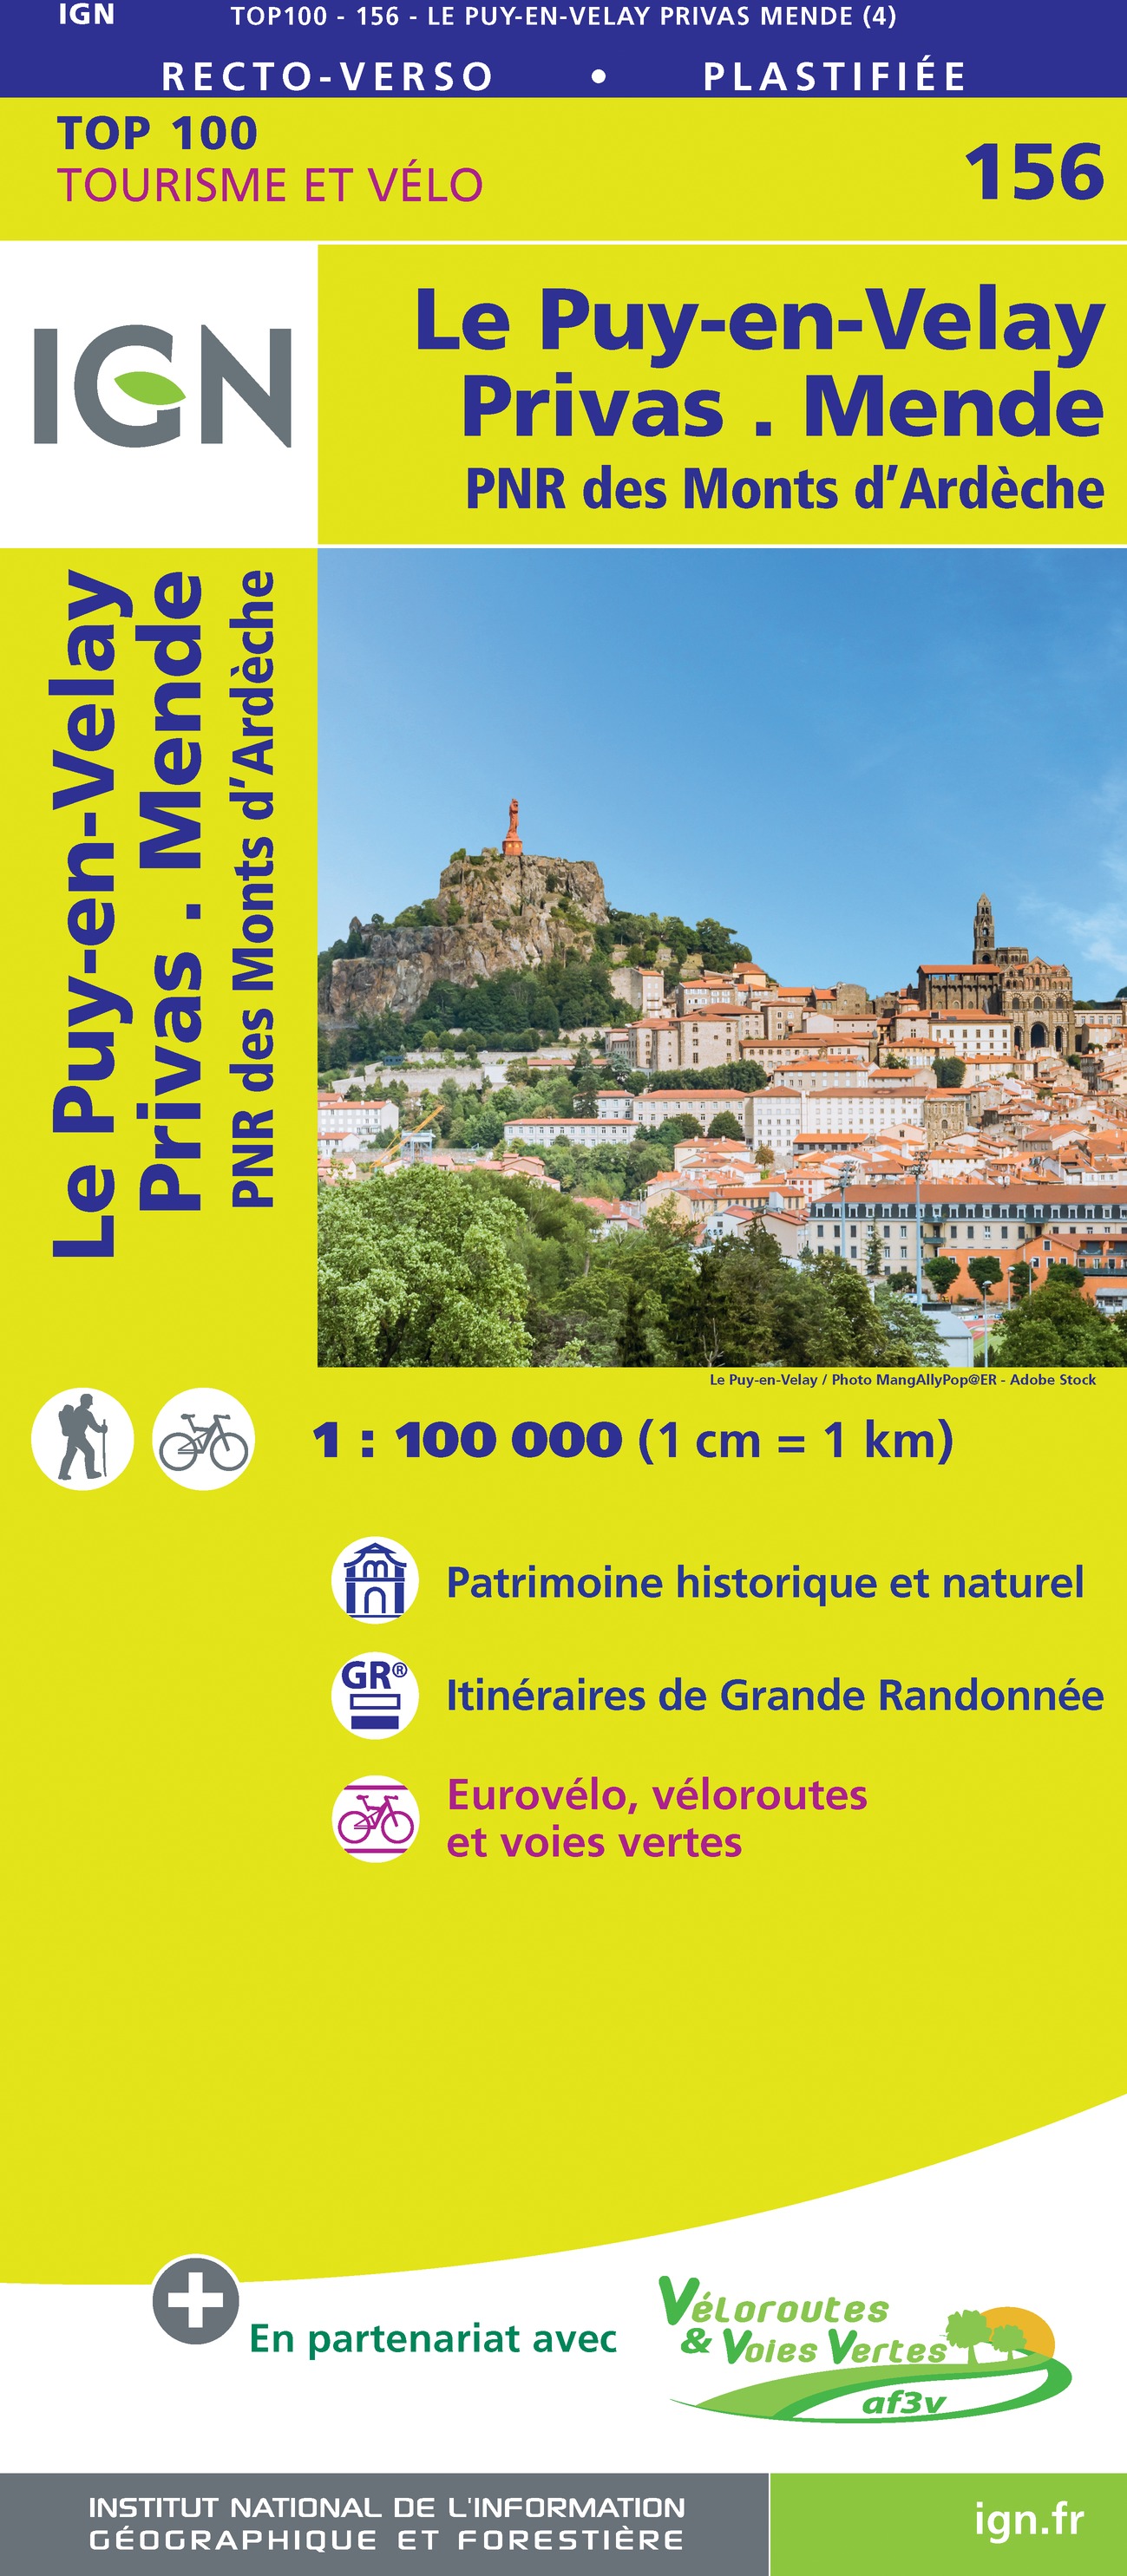 Online bestellen: Fietskaart - Wegenkaart - landkaart 156 Le Puy en Velay - Privas - Mende | IGN - Institut Géographique National